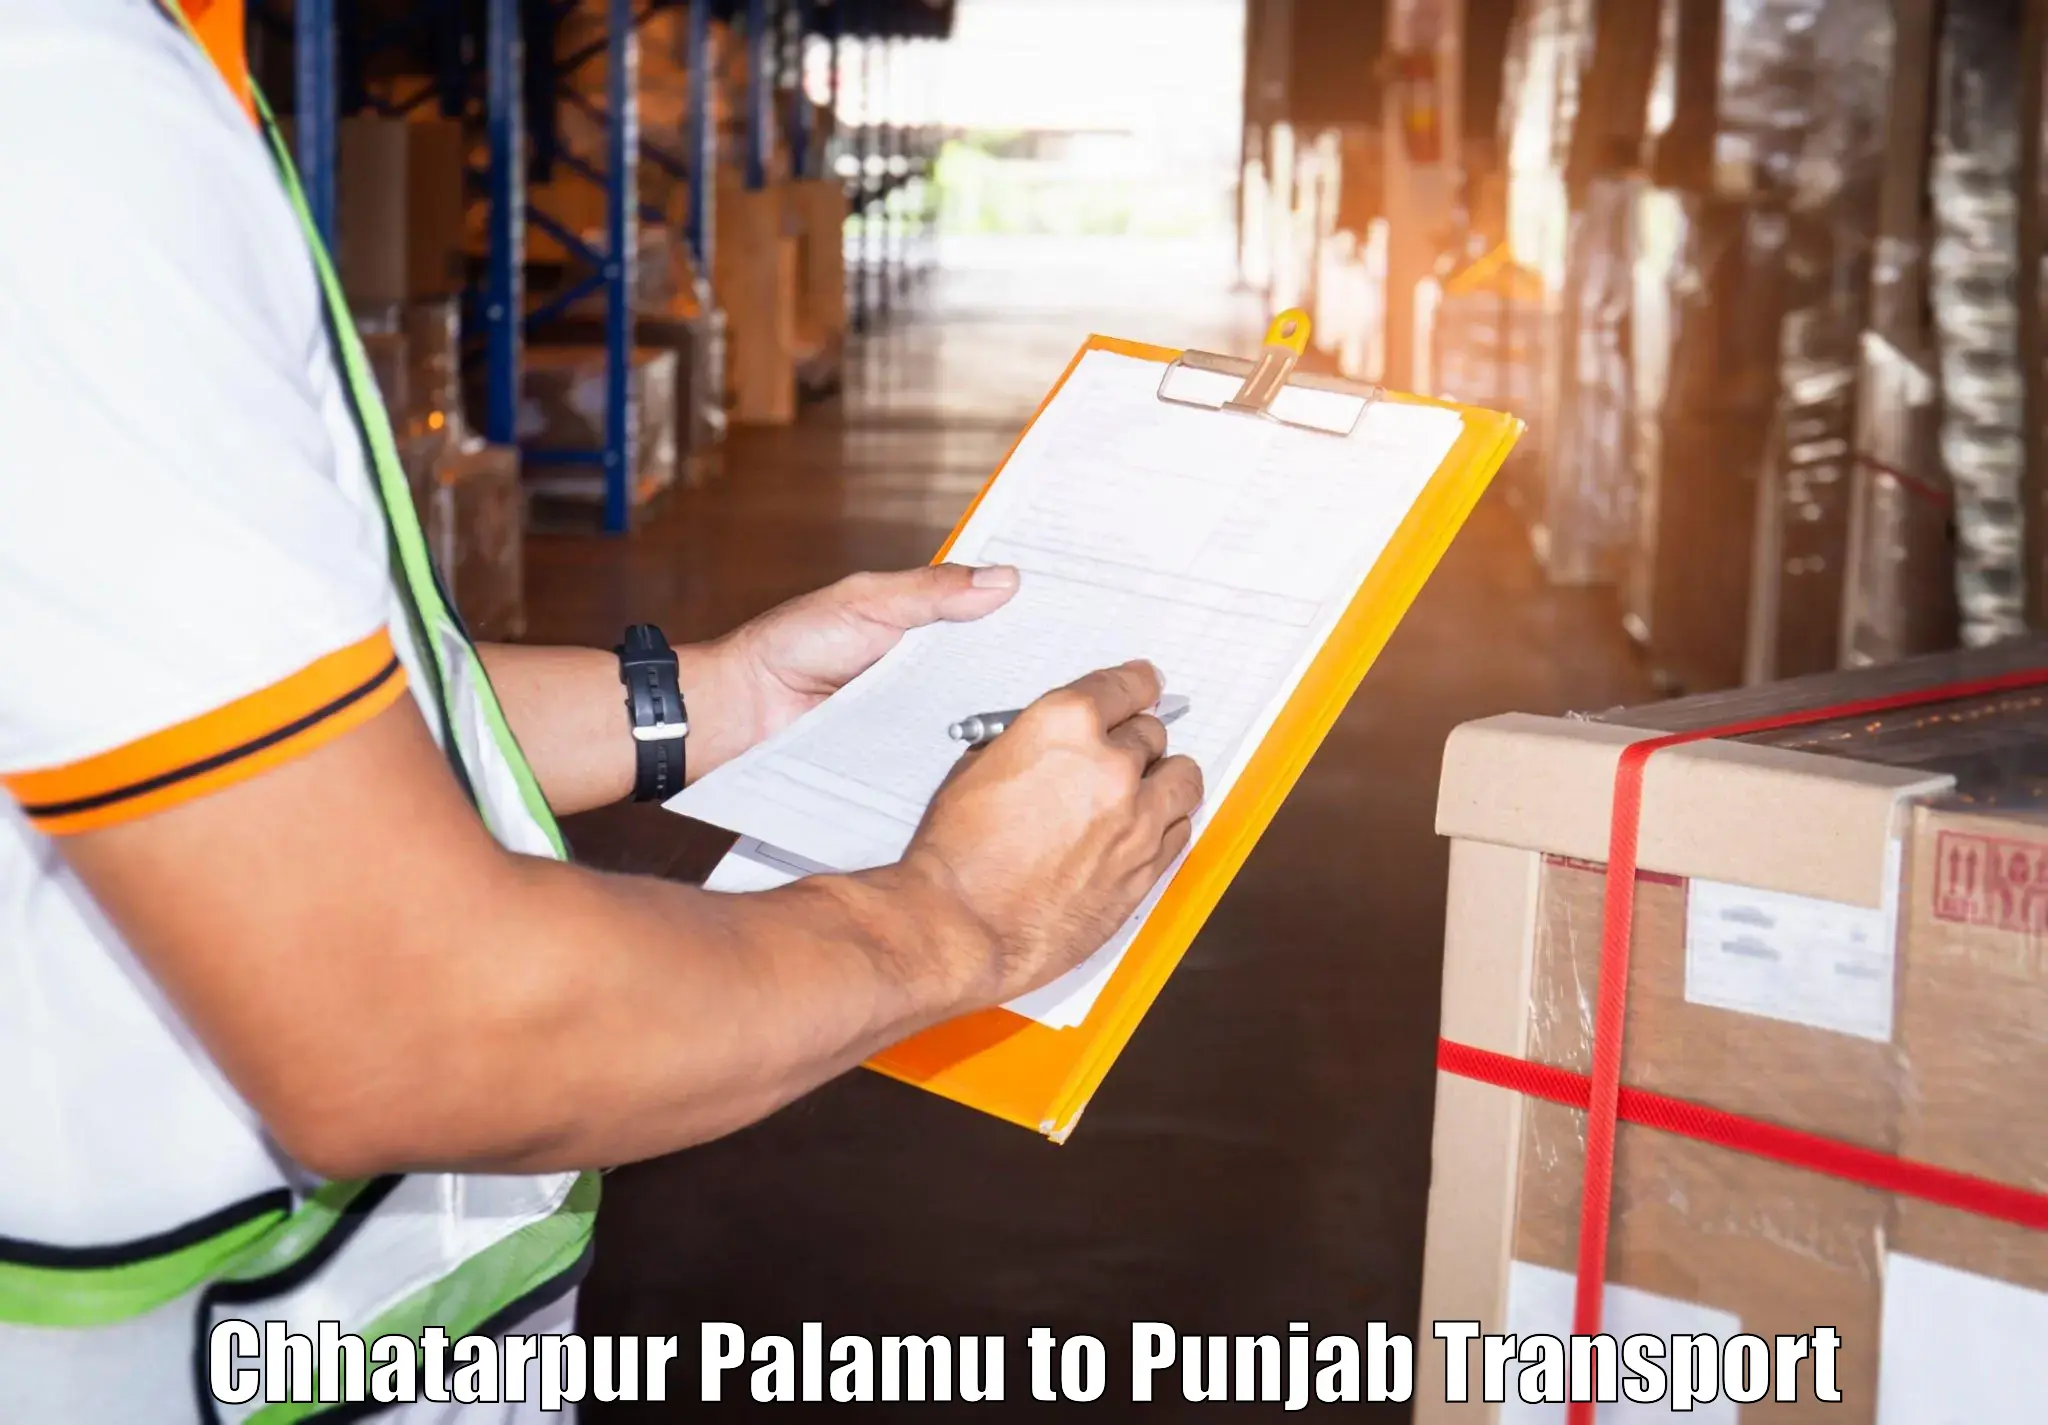 Pick up transport service Chhatarpur Palamu to Amritsar